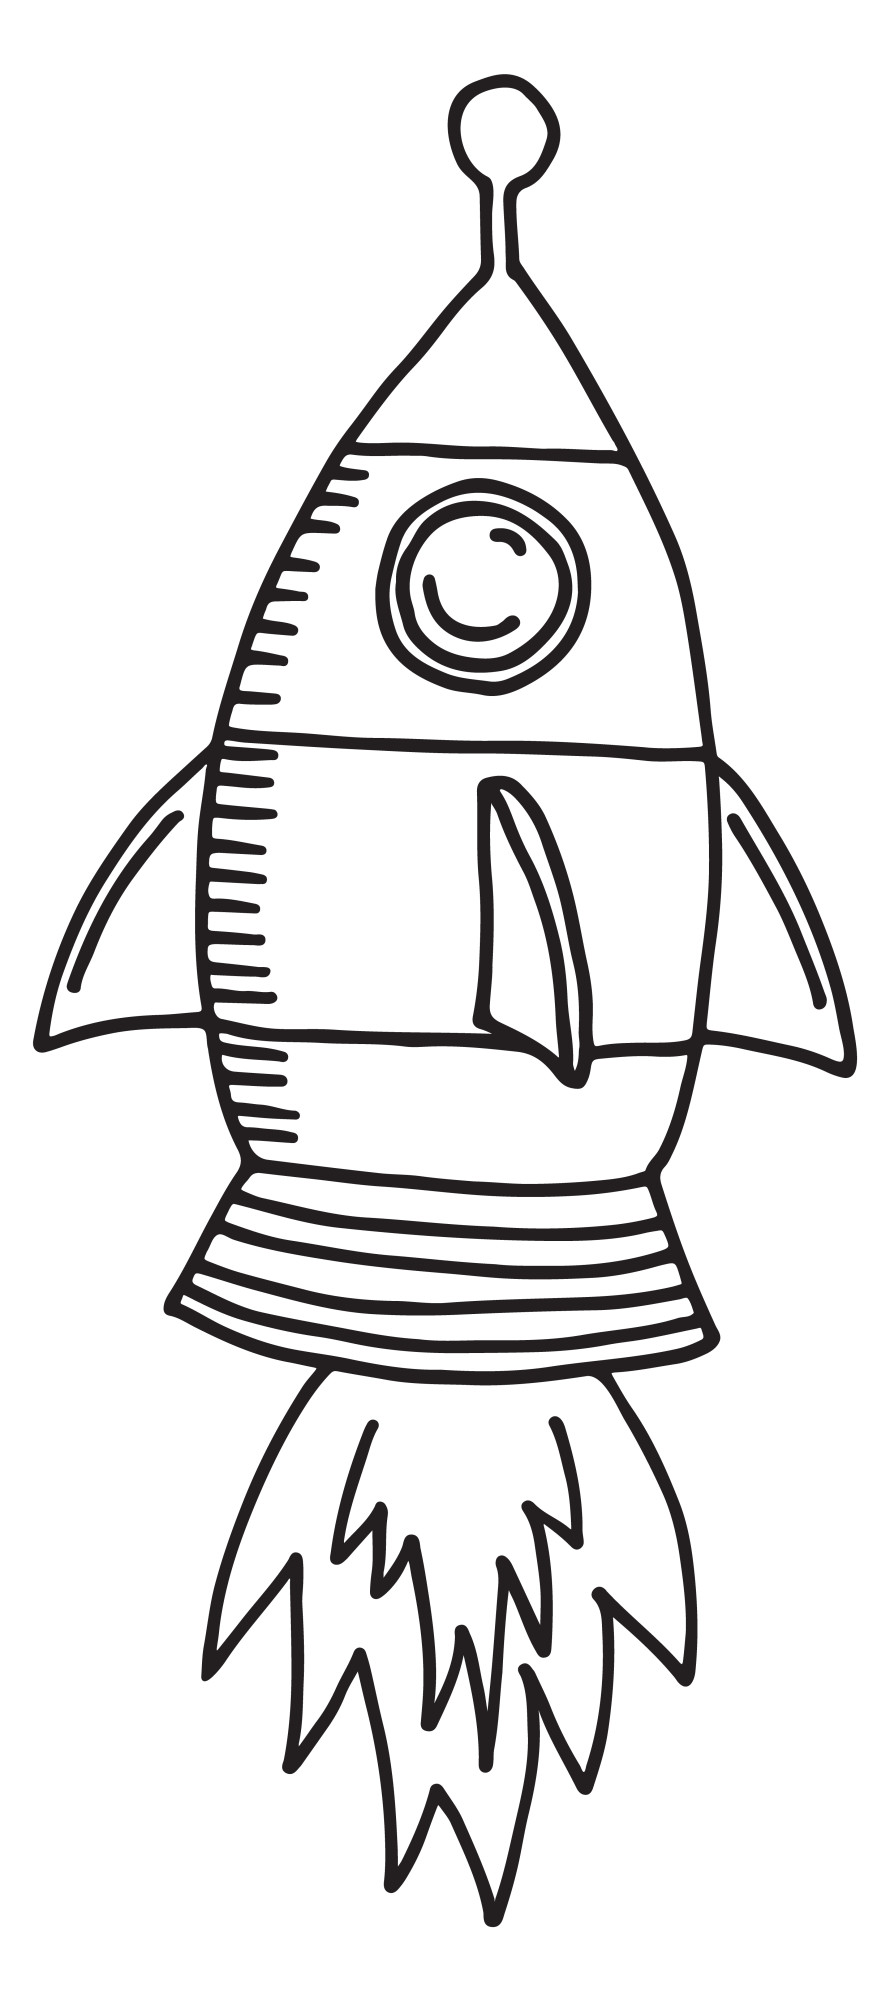 Раскраска для детей: милая игрушка космическая ракета